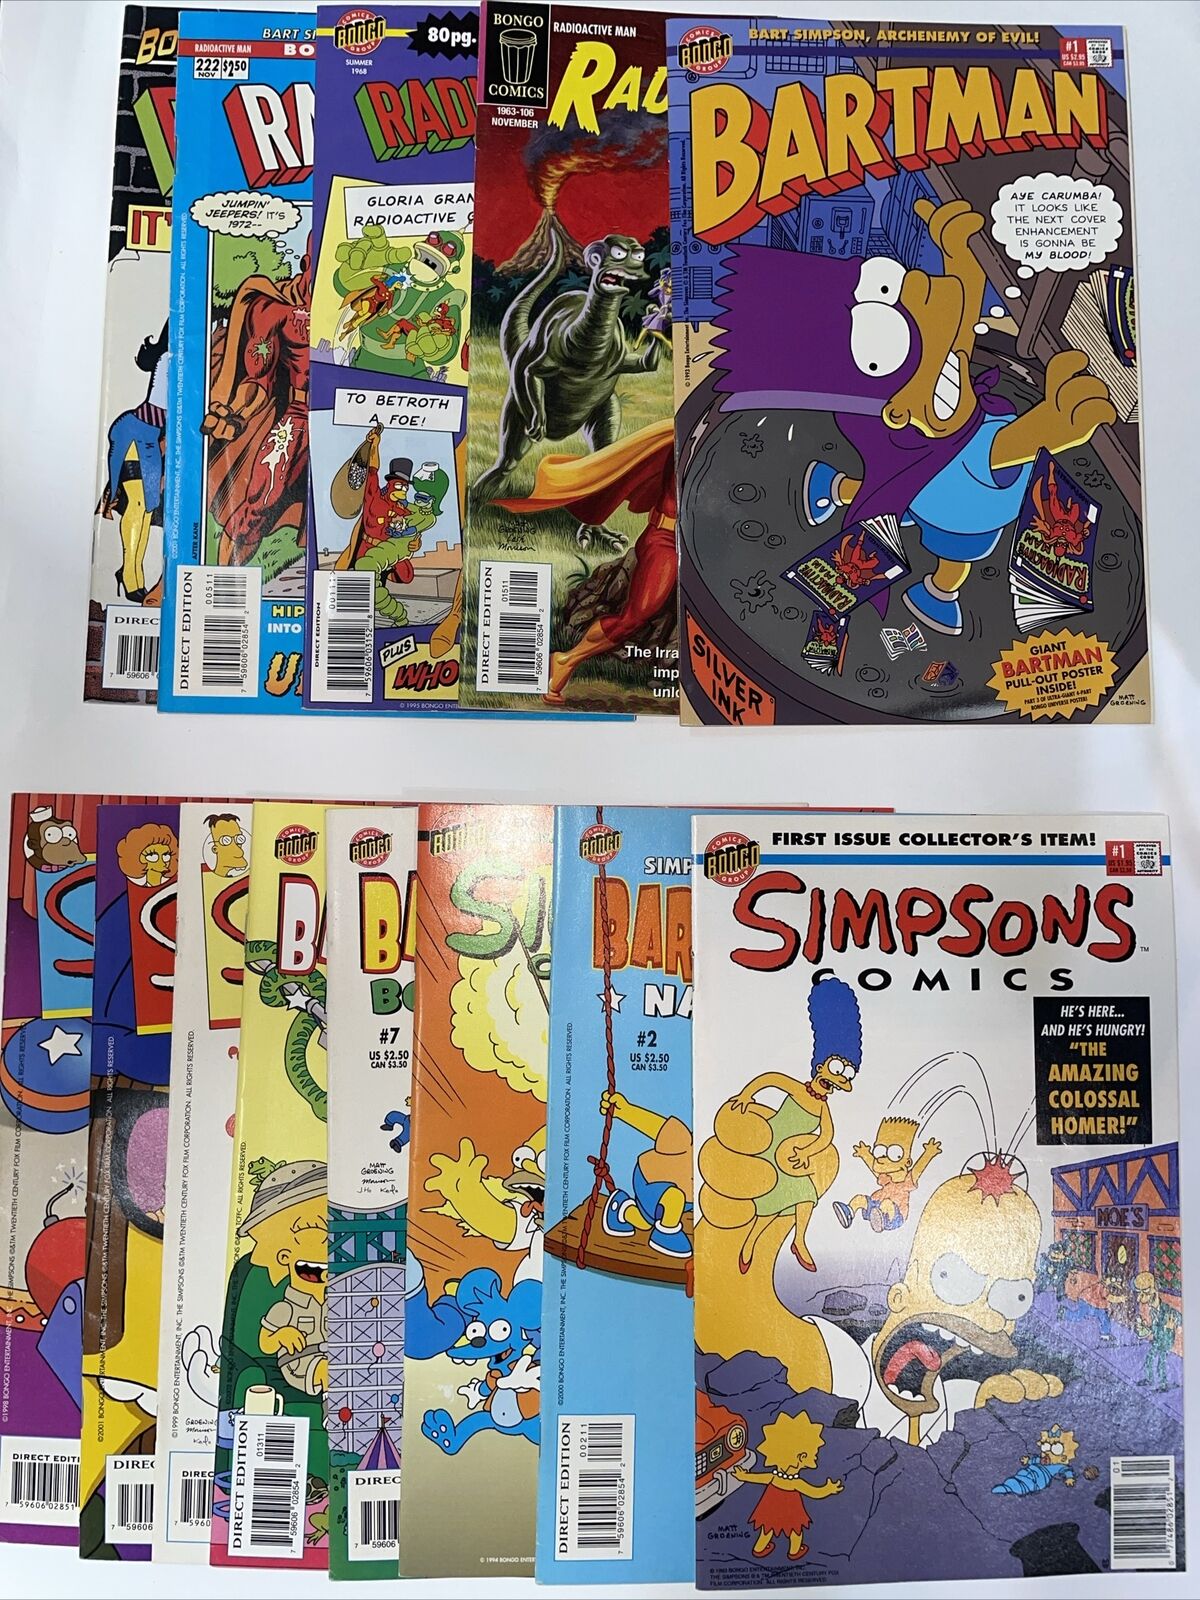 Simpsons 1,2,5,7,9,40,41,57 Bartman #1 1993 Foil Poster Bongo, radioactive man